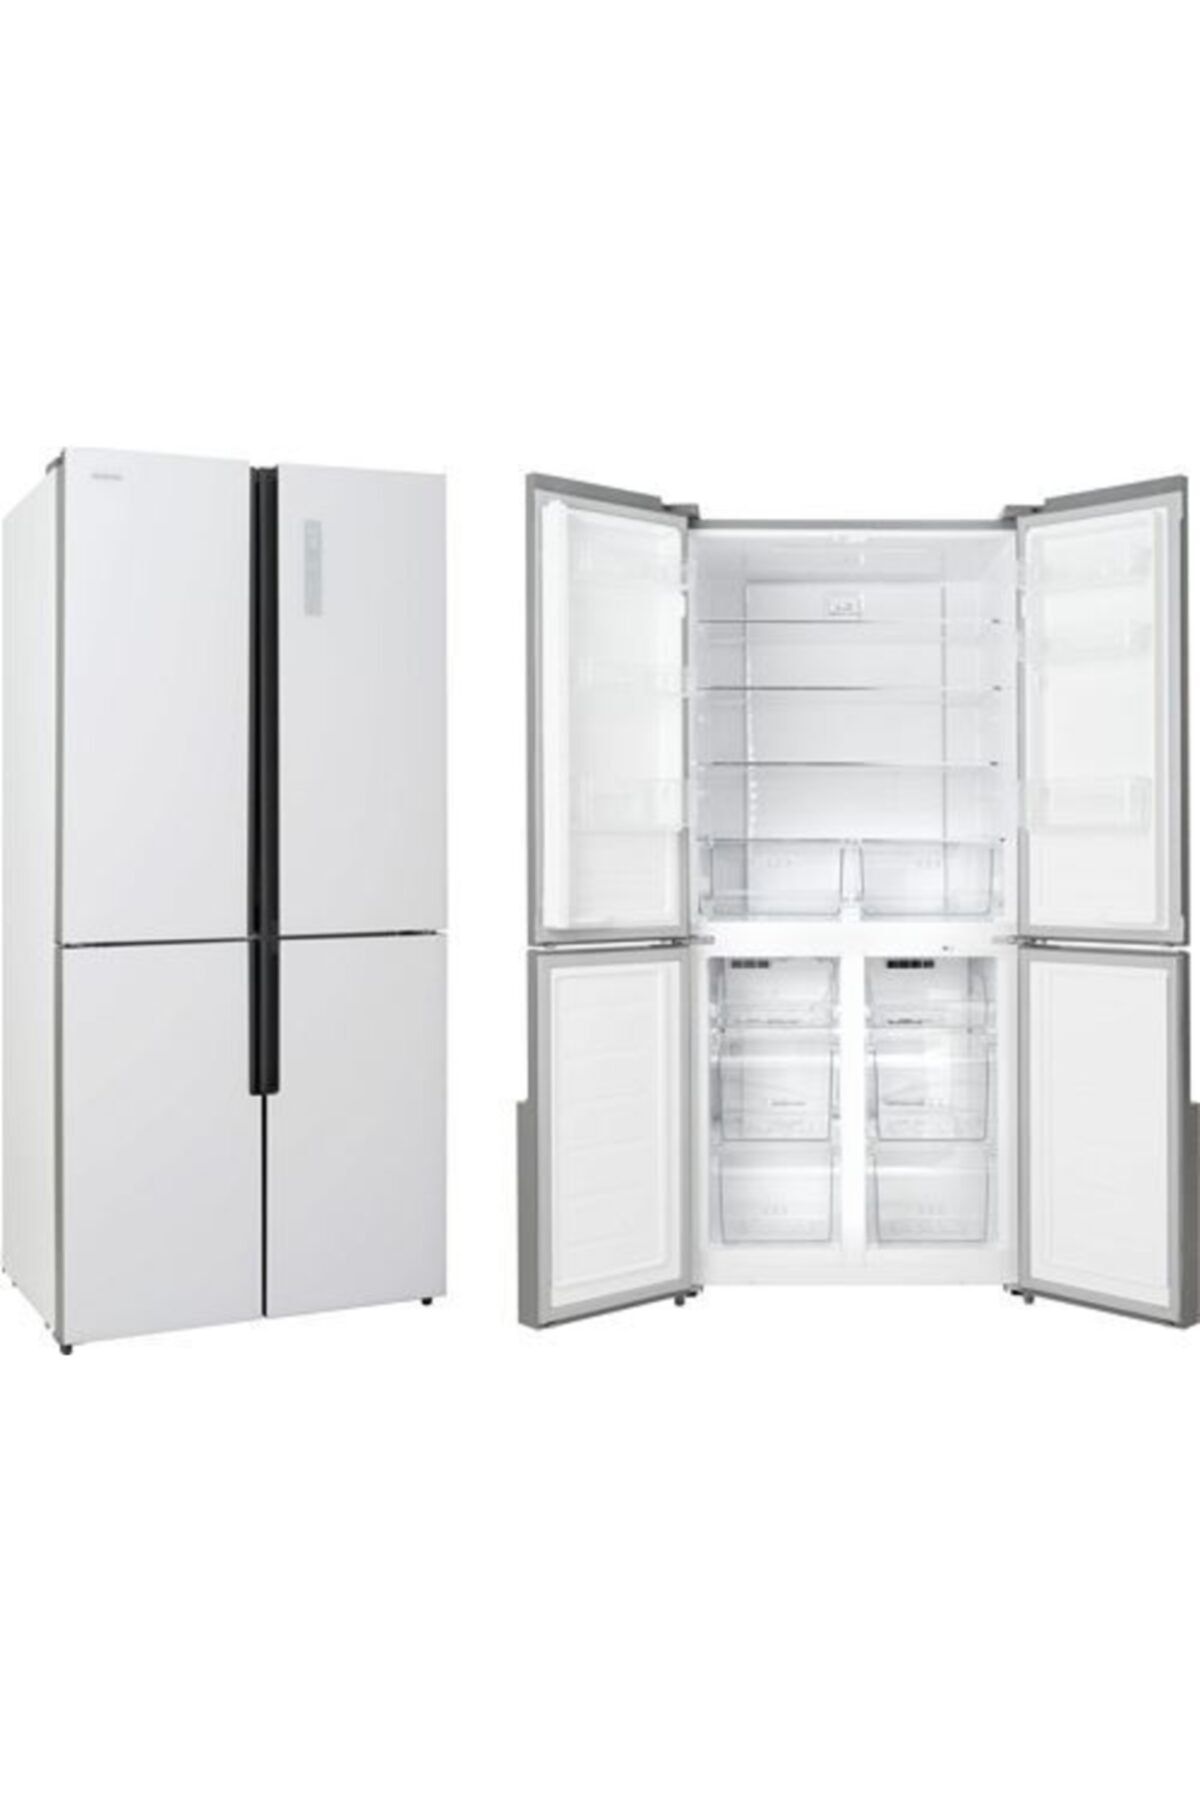 Silverline Gardrop Tipi 4 Kapılı Buzdolabı